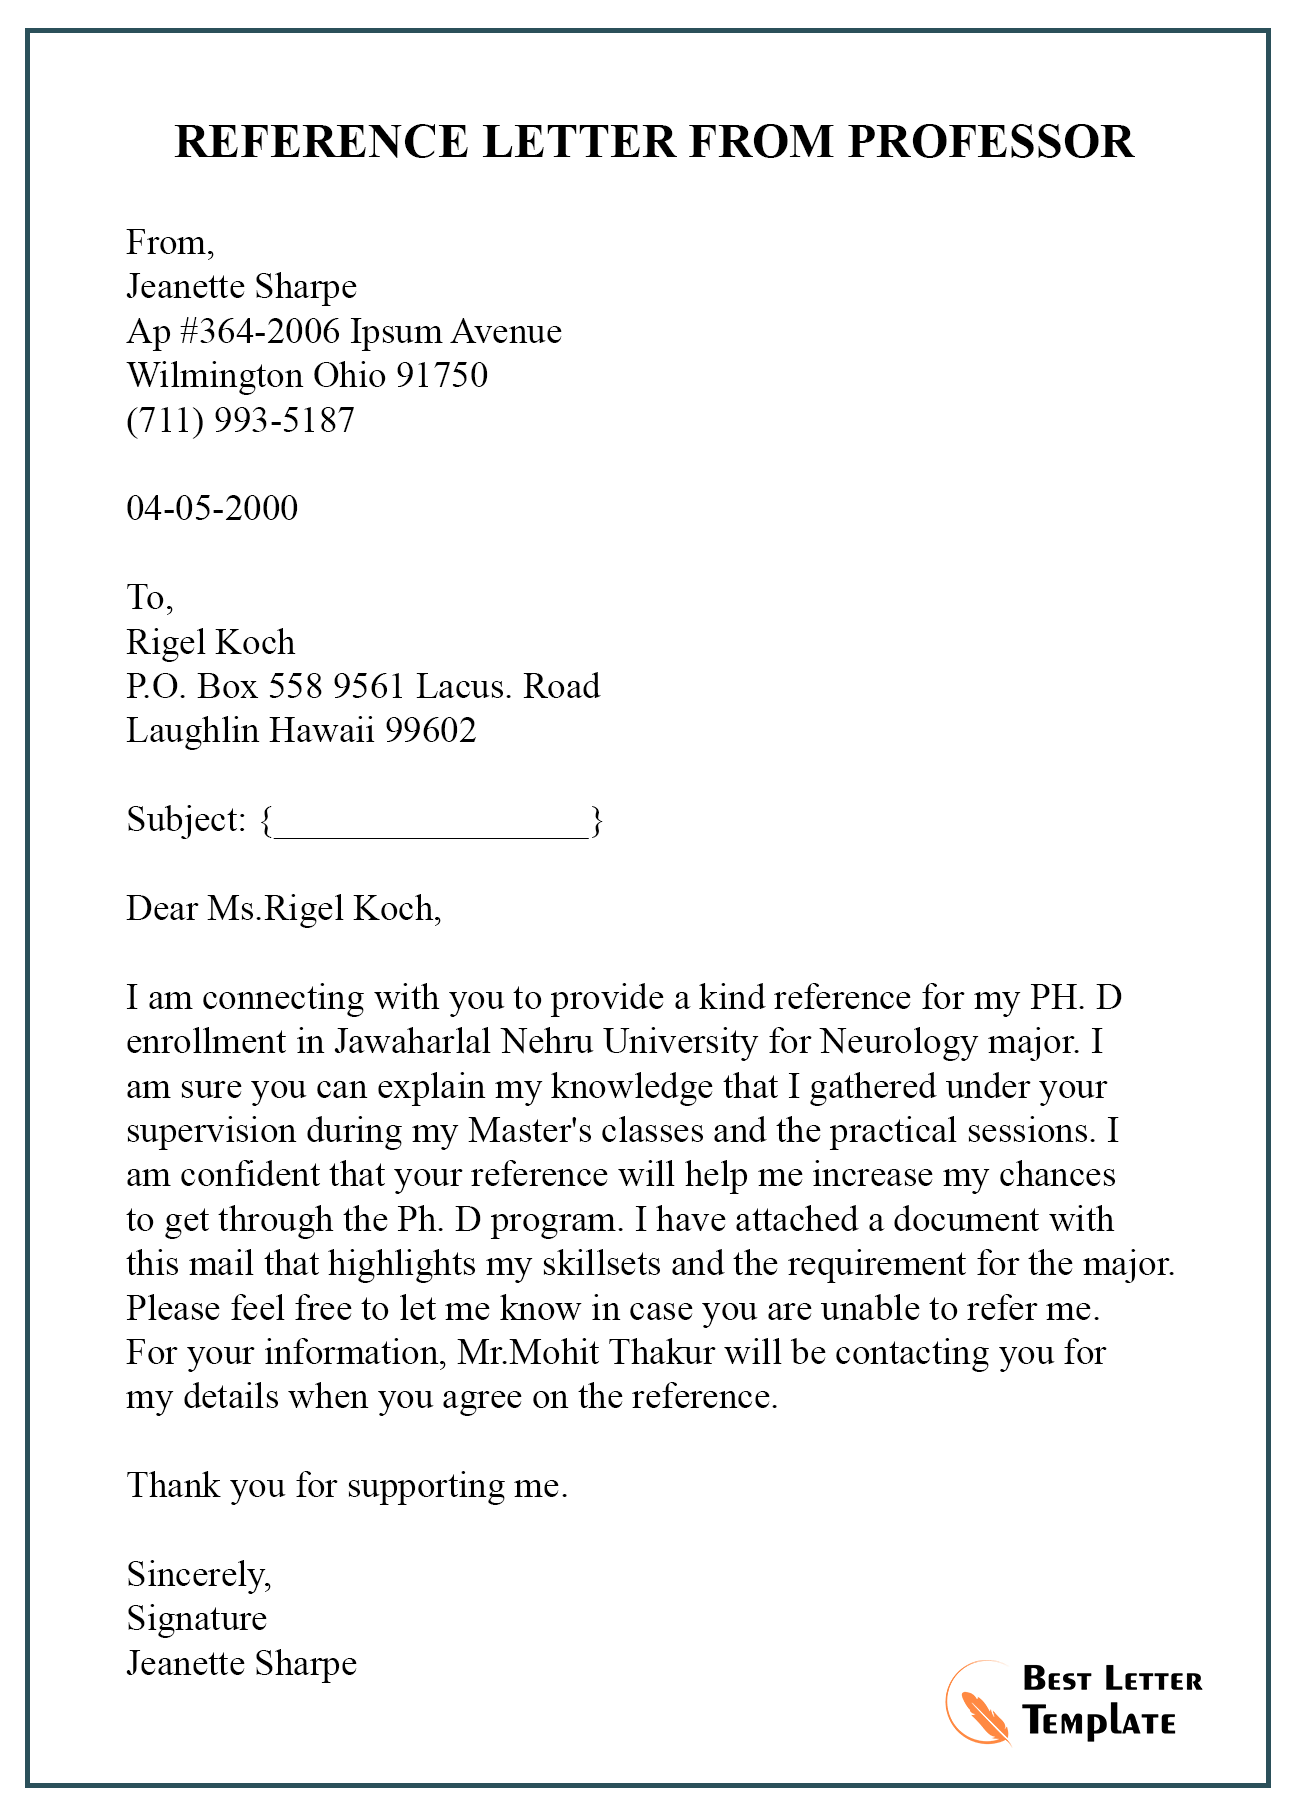 Recommendation Letter For Professor from bestlettertemplate.com